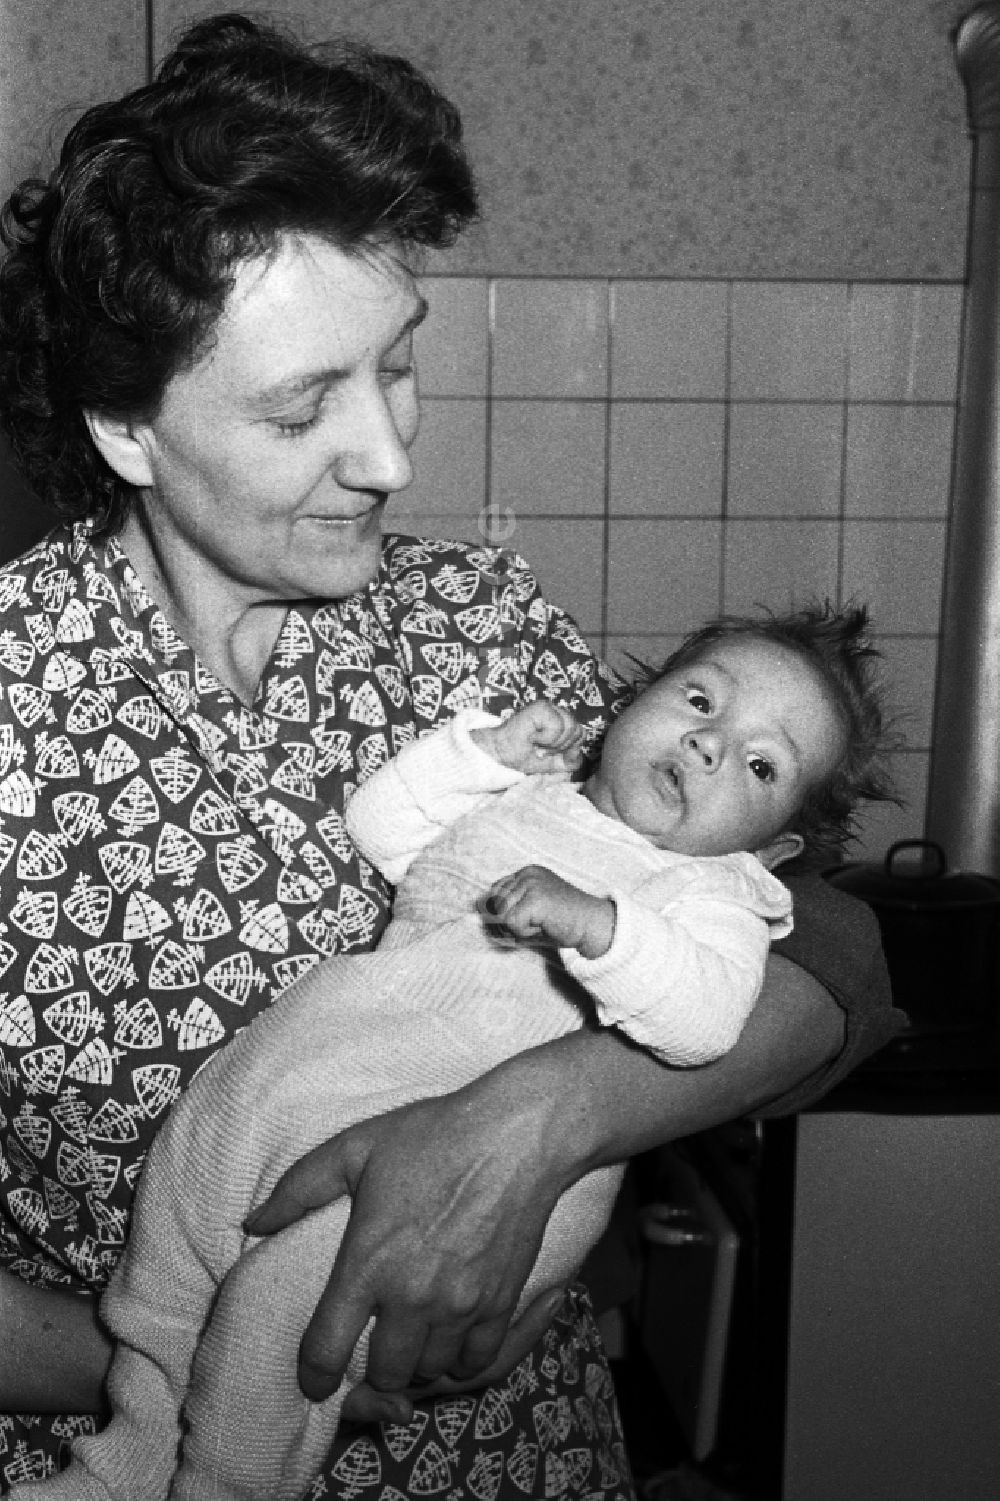 Merseburg: Frau mit Baby auf dem Arm in Merseburg in Sachsen-Anhalt in der DDR